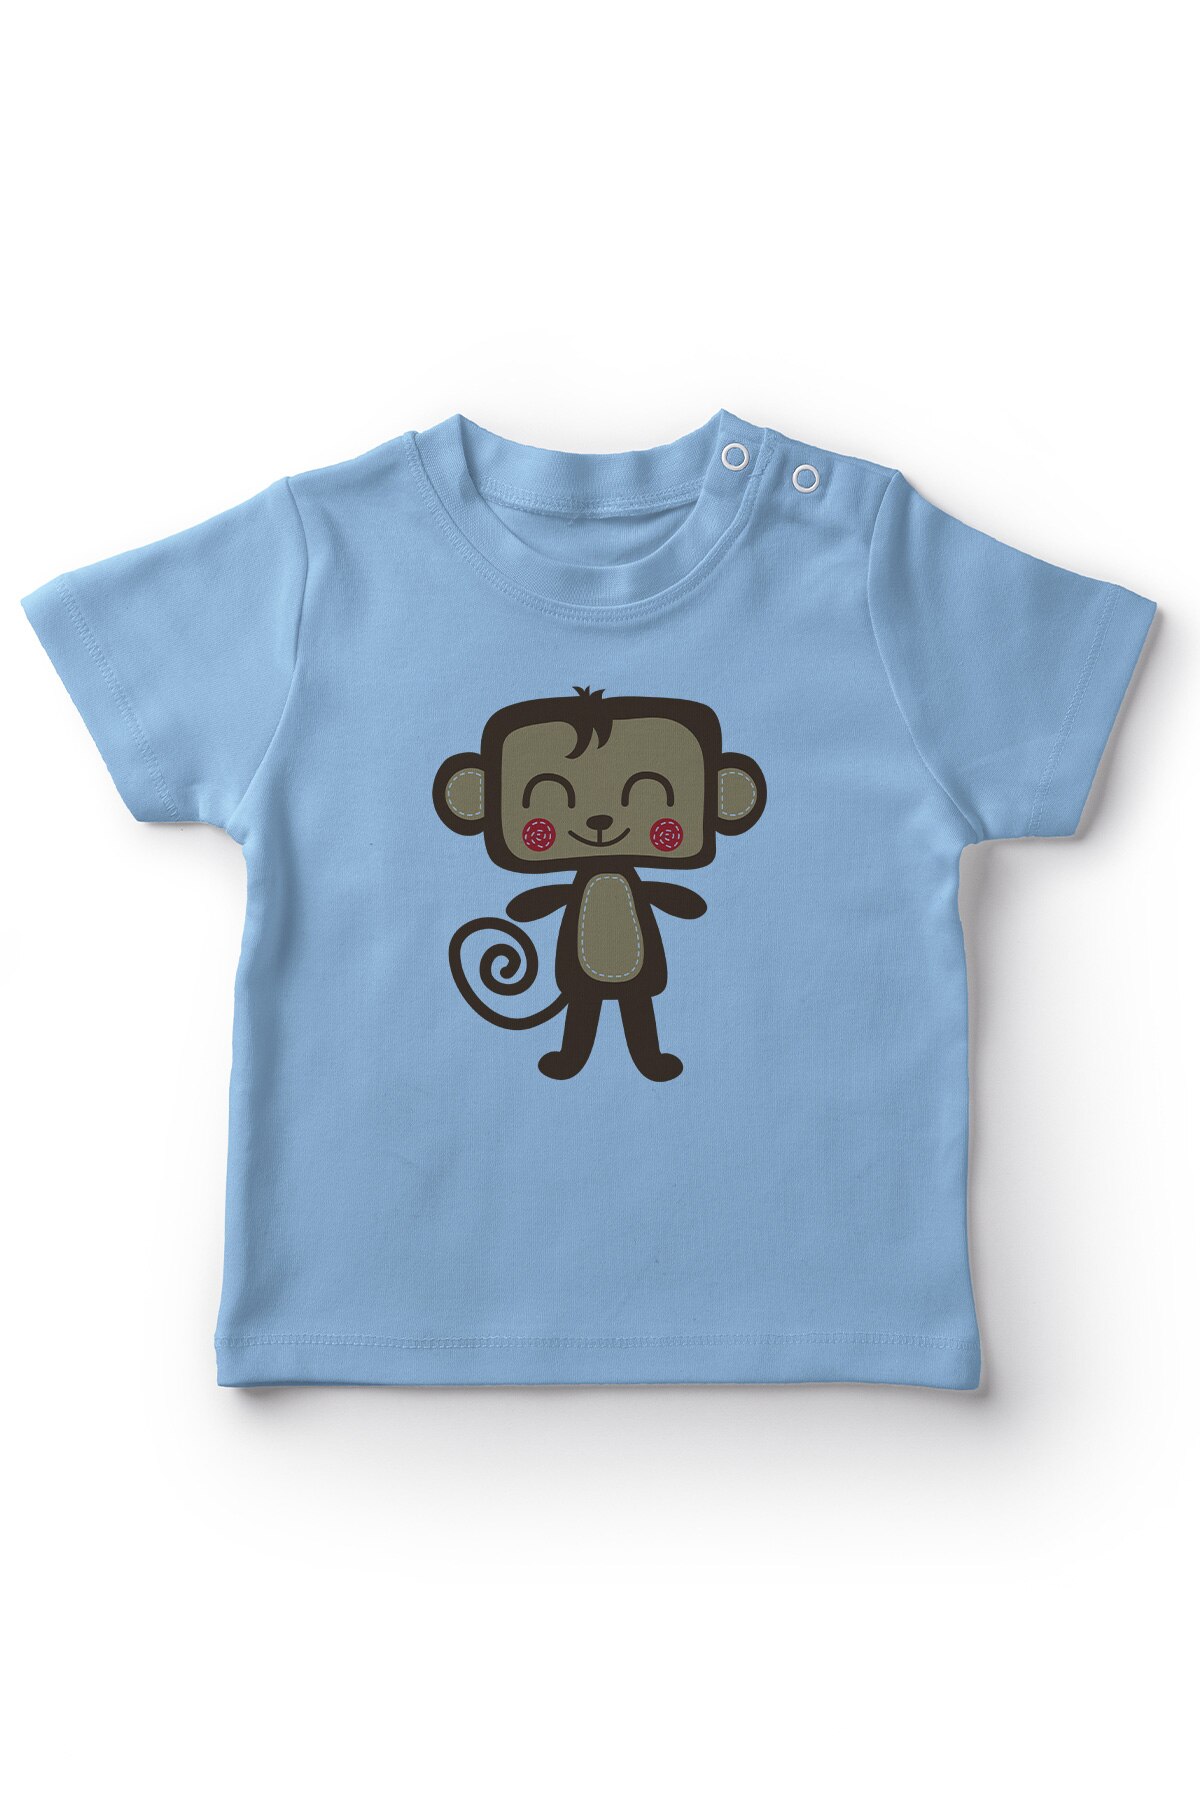 Angemiel Baby Zoete Lachende Aap Baby Boy T-shirt Blauw